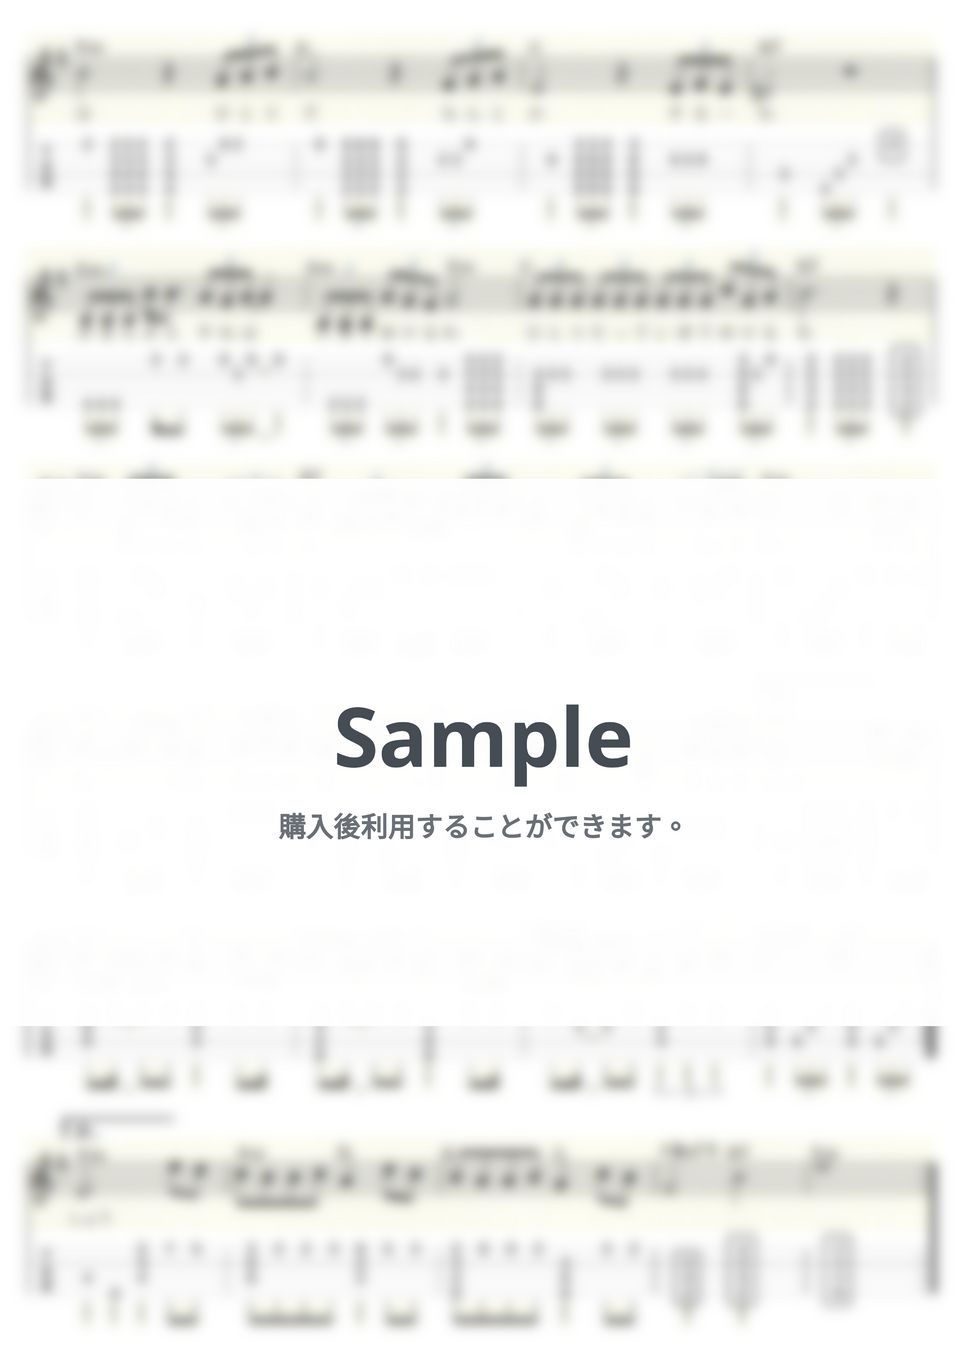 美川憲一 - お金をちょうだい (ｳｸﾚﾚｿﾛ/Low-G/中級) by ukulelepapa